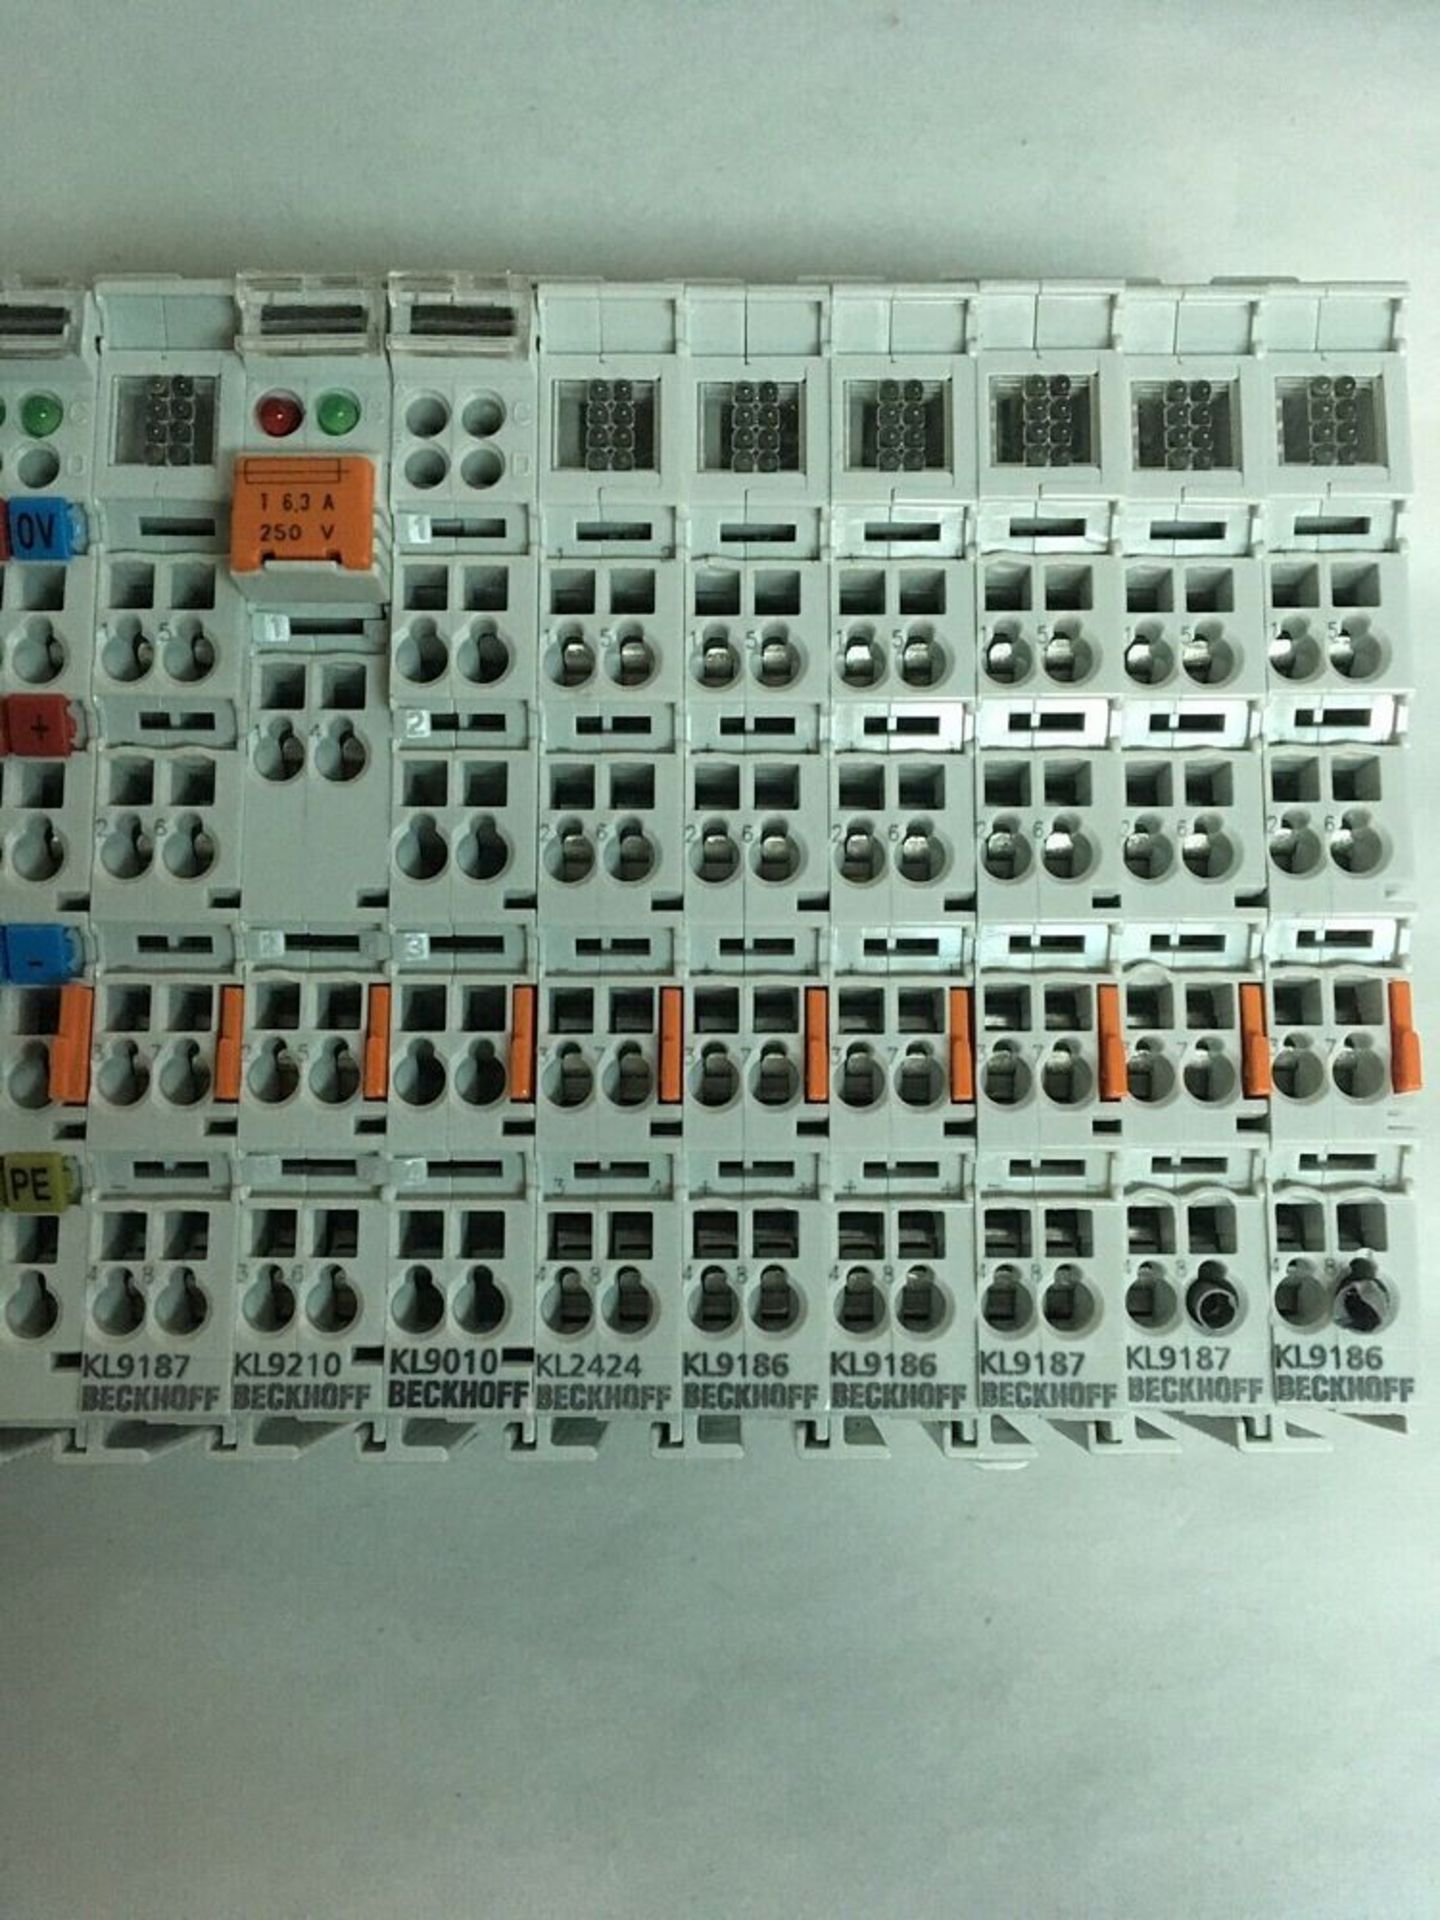 Beckhoff BK9000 PLC Terminal Module Rack - Image 2 of 2